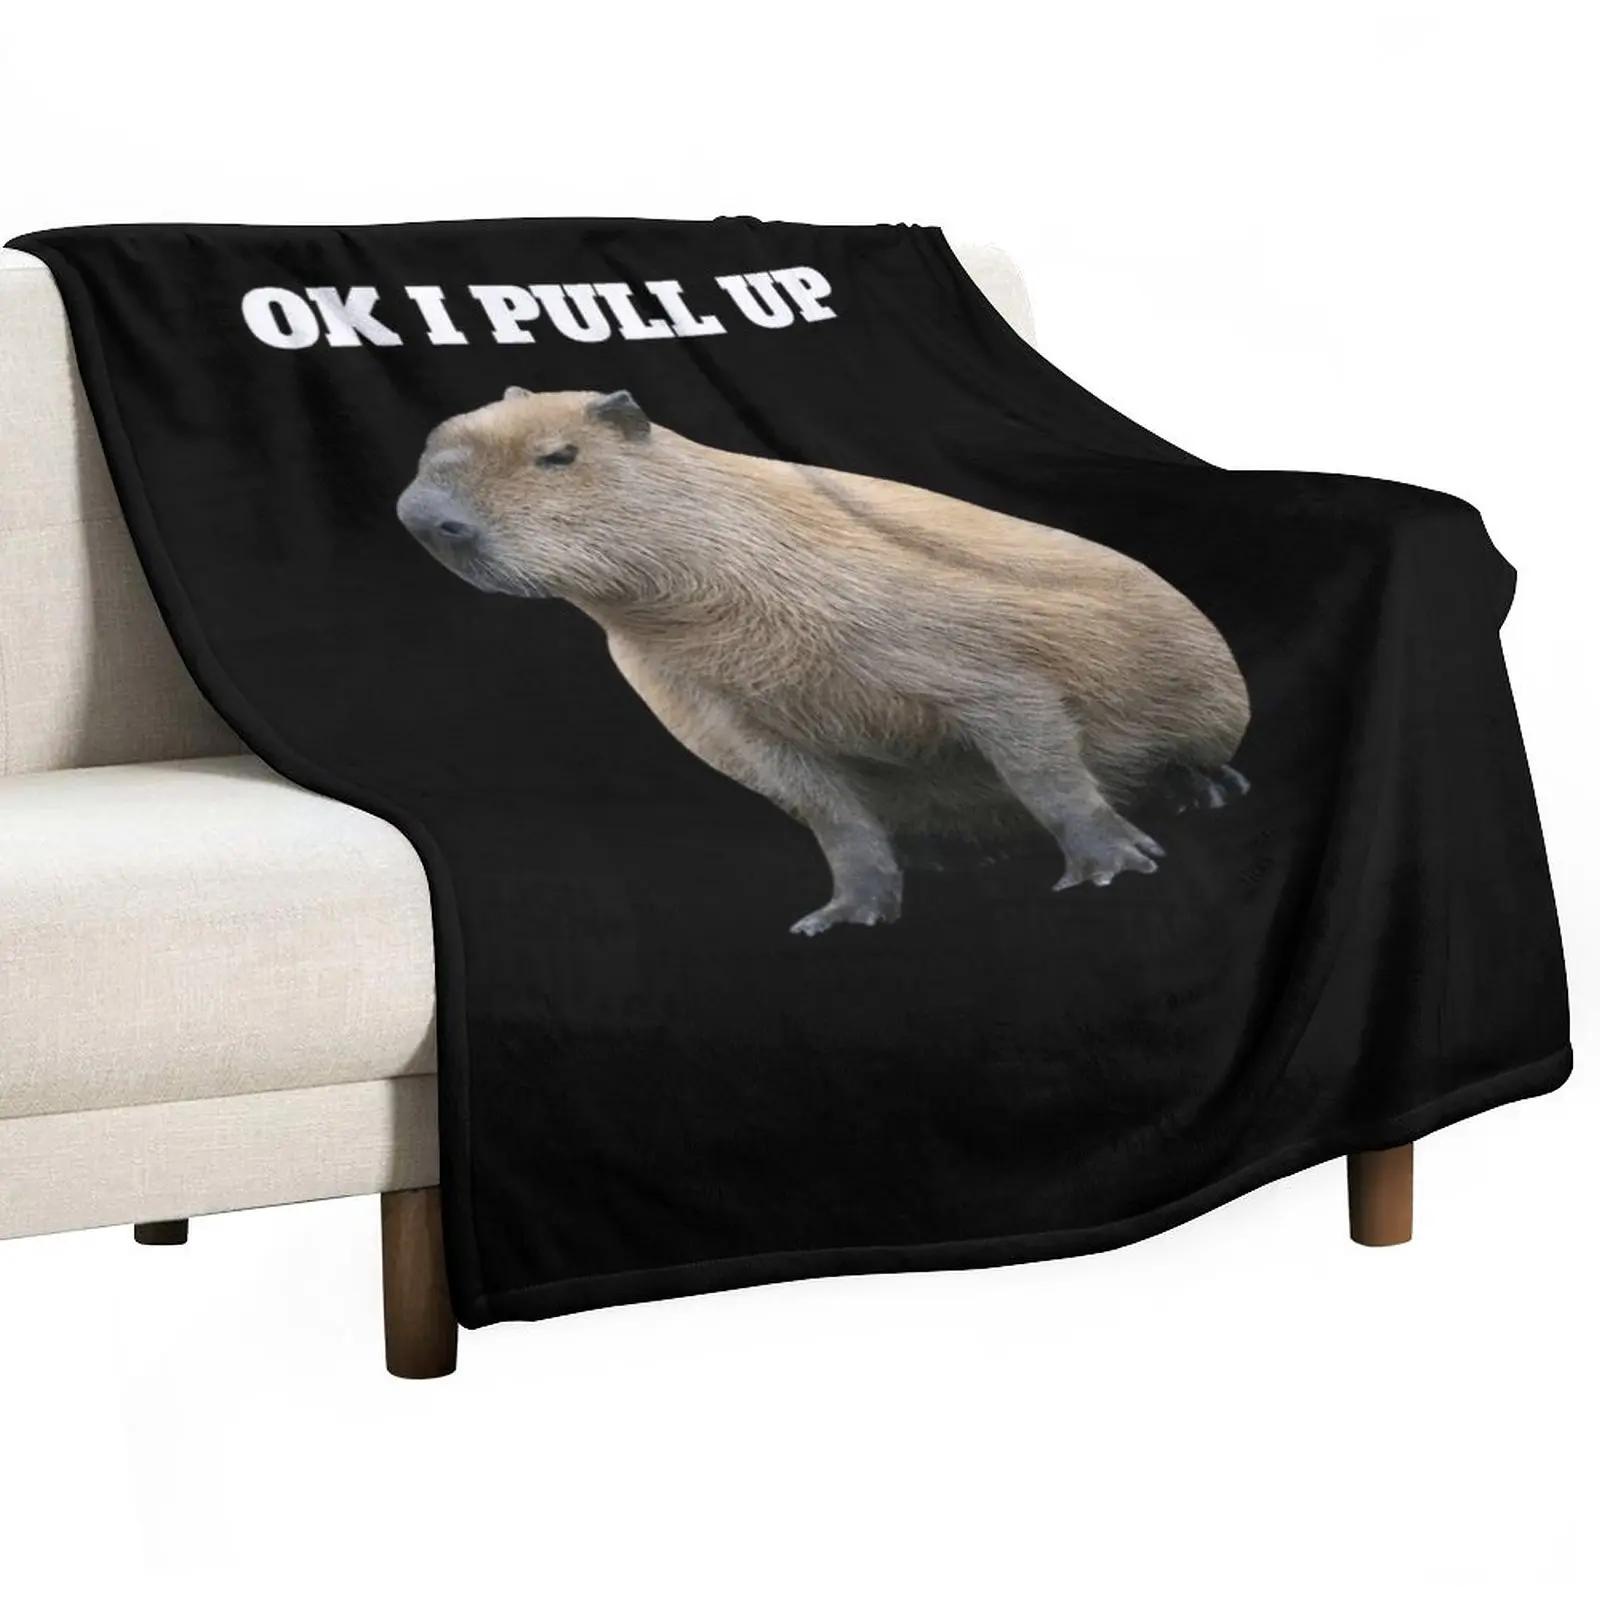 Ok I Pull up Capybara  , غ  